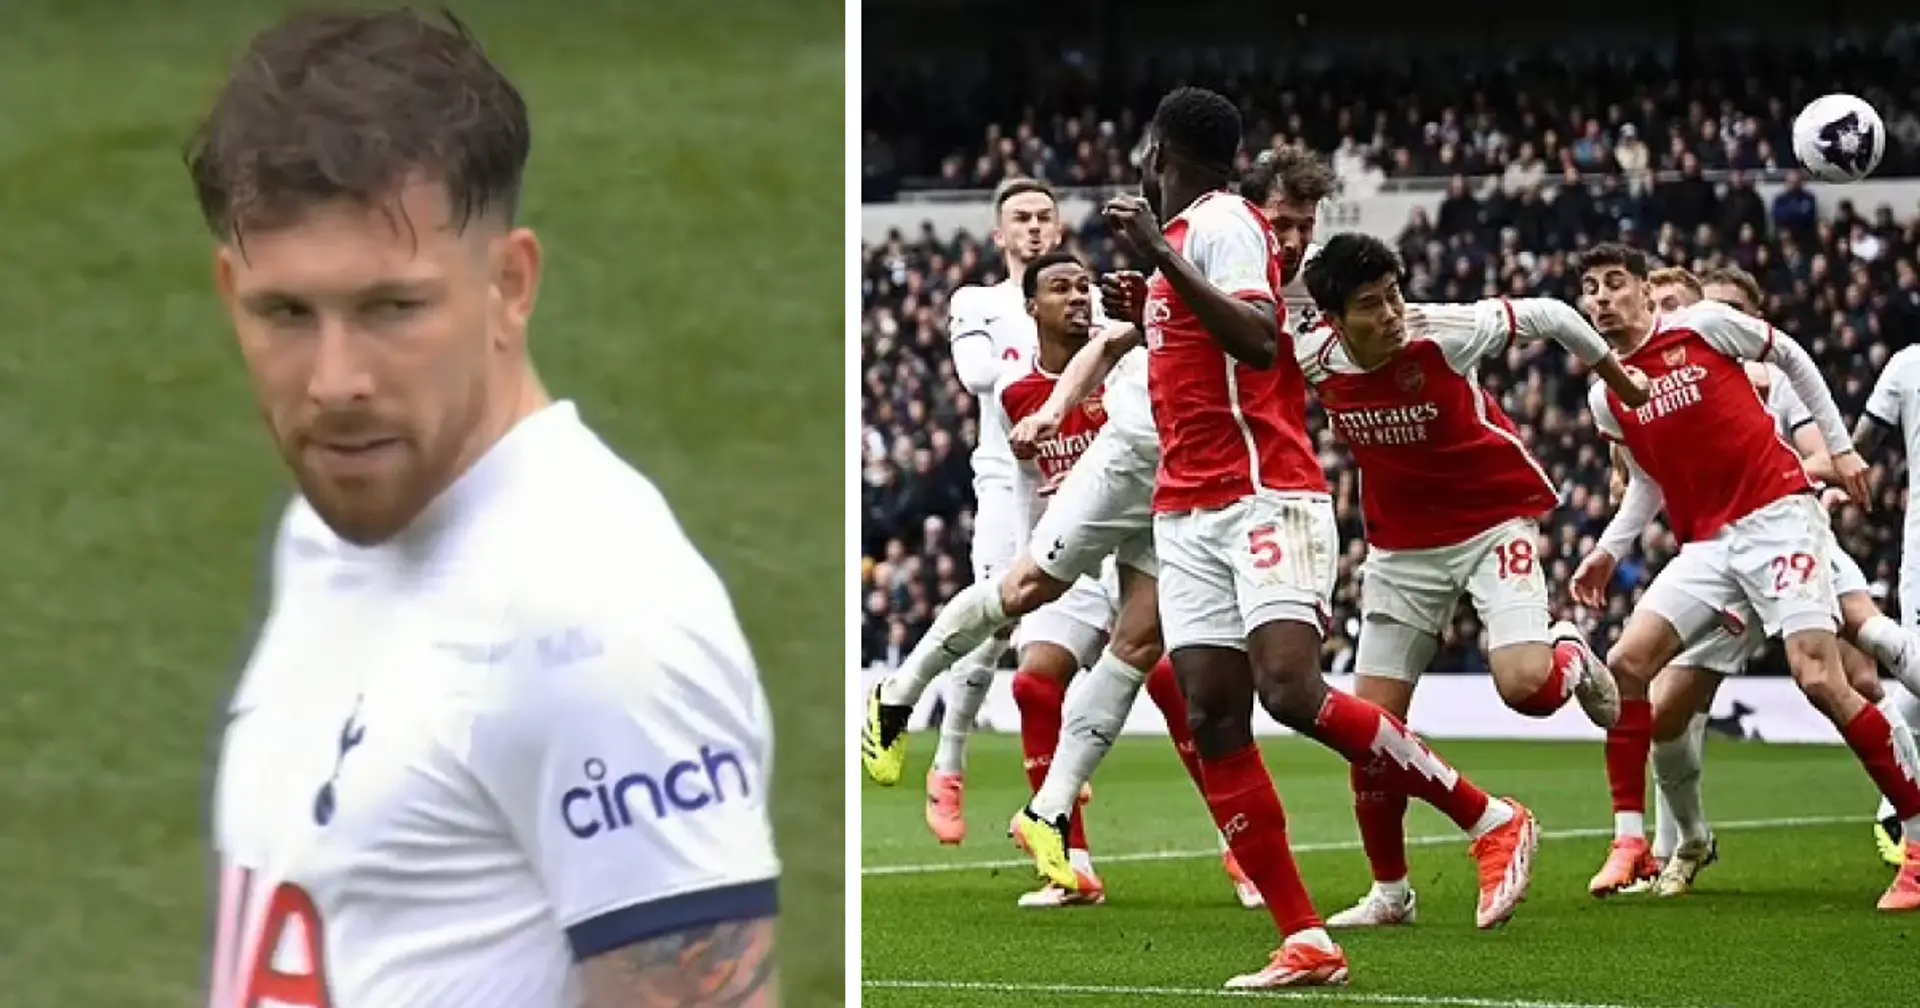 'Under-12 football match': Paul Merson slams Tottenham defending for Arsenal's opener